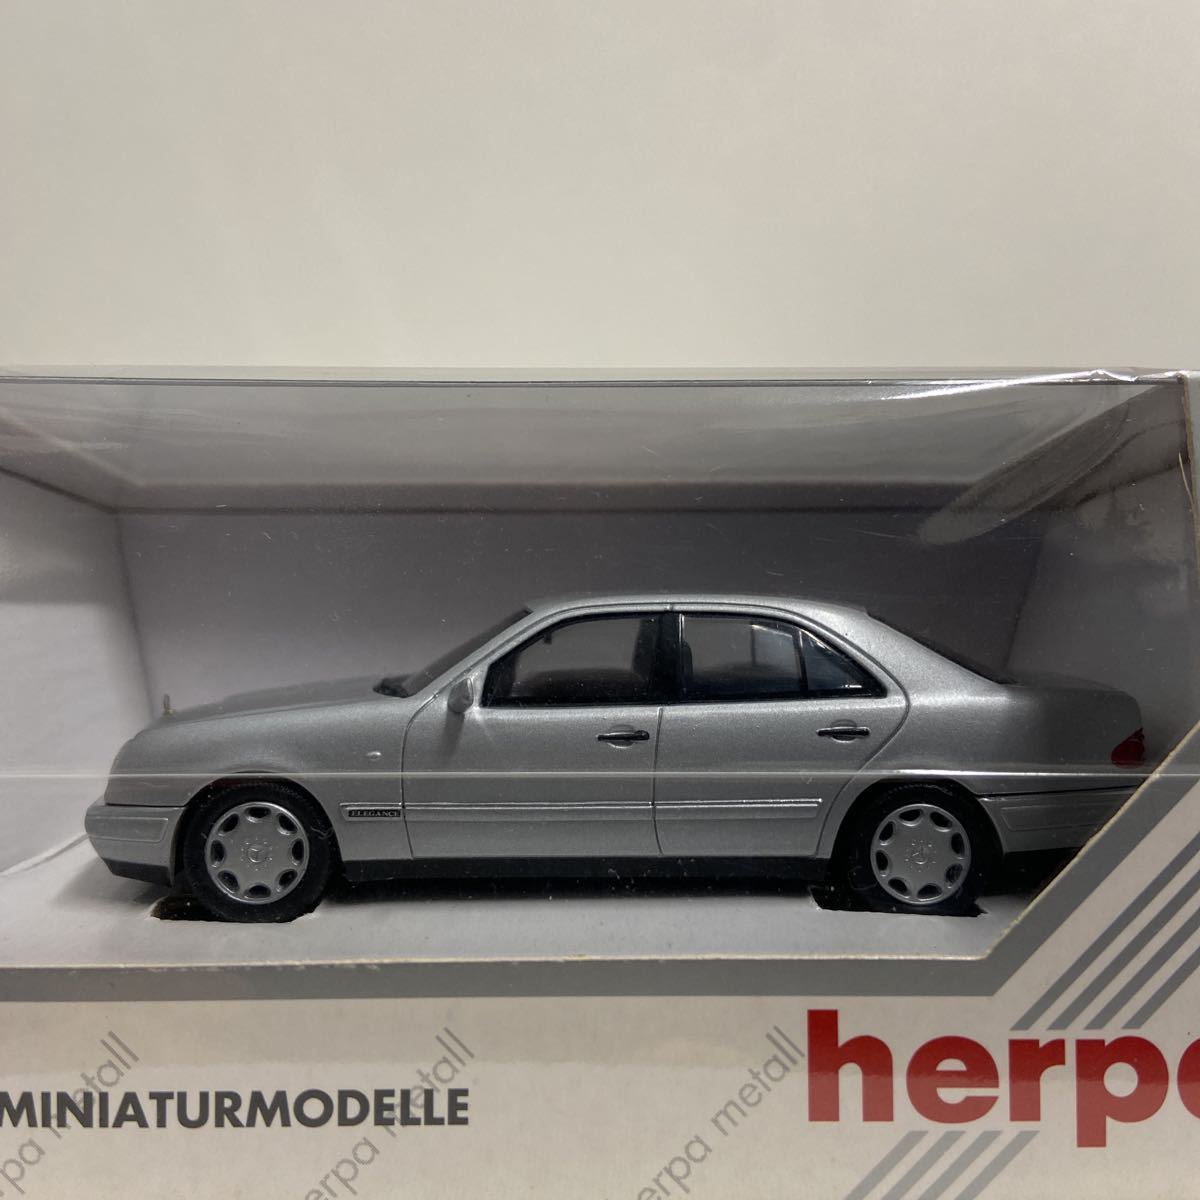 herpa 1/43 Mercedes Benz E280 Elegance ヘルパ メルセデスベンツ Eクラス セダン W210 シルバー ミニカー モデルカー_画像4